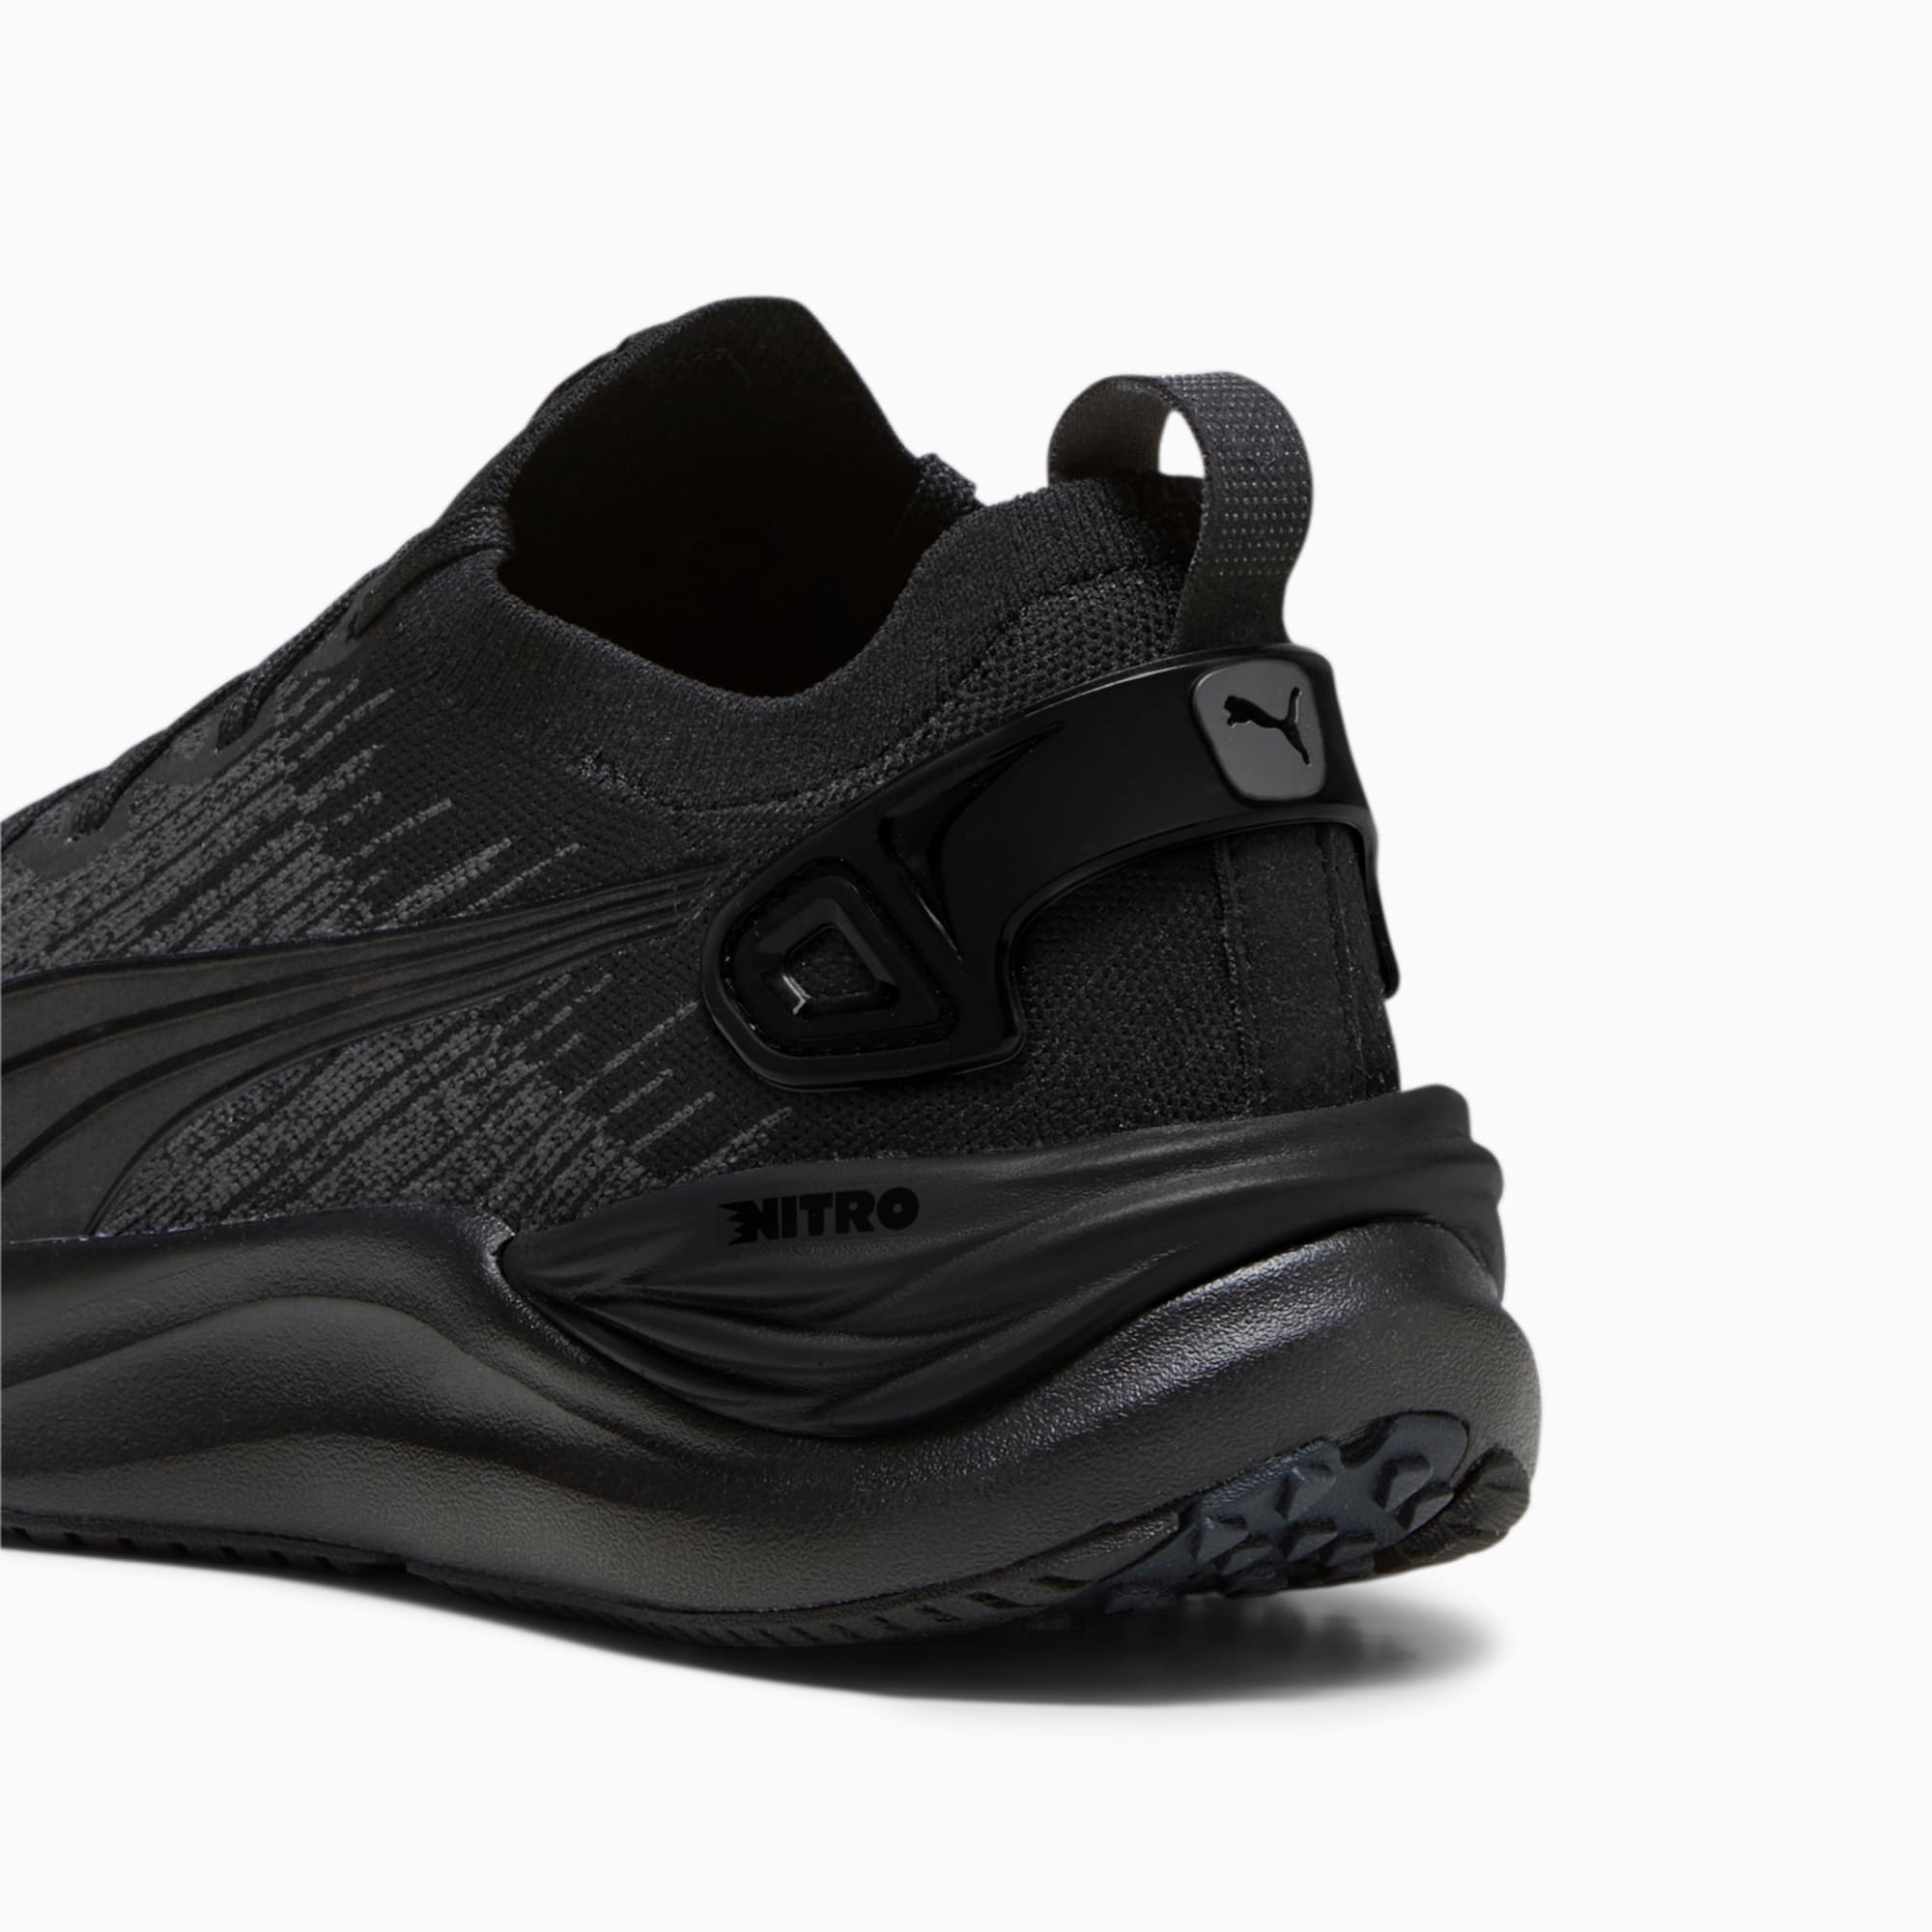 PUMA Chaussures De Running Electrify NITRO 3 Knit Pour Homme, Noir/Gris